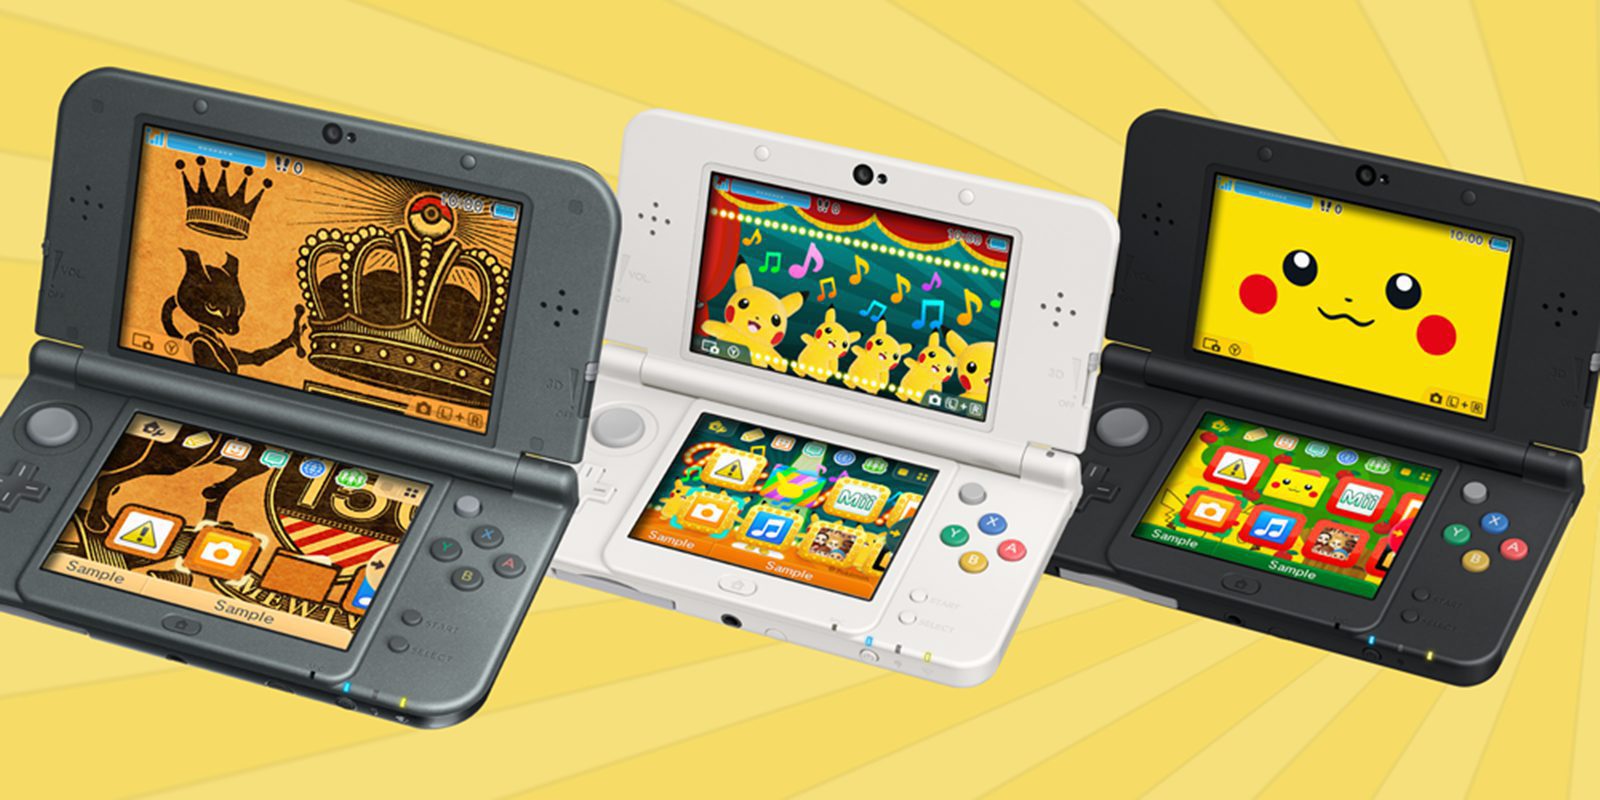 Игры покемон на нинтендо. Нинтендо 2дс. Нинтендо 2дс покемон. Покемоны на Нинтендо ДС. Nintendo 2ds XL Pikachu Edition.